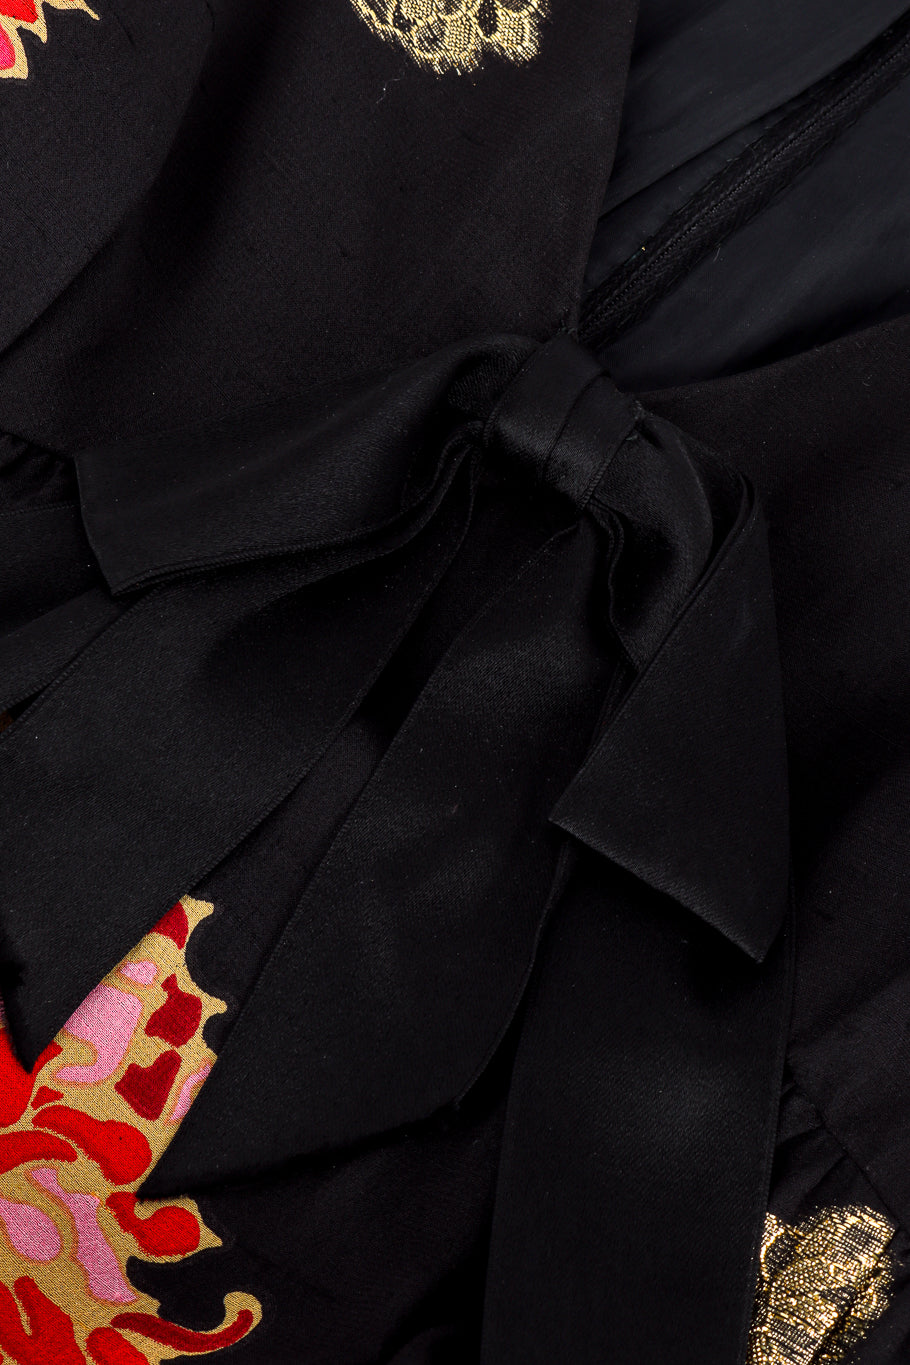 Vintage Malcolm Starr Flower Lamé Silk Dress front bow closeup @recessla